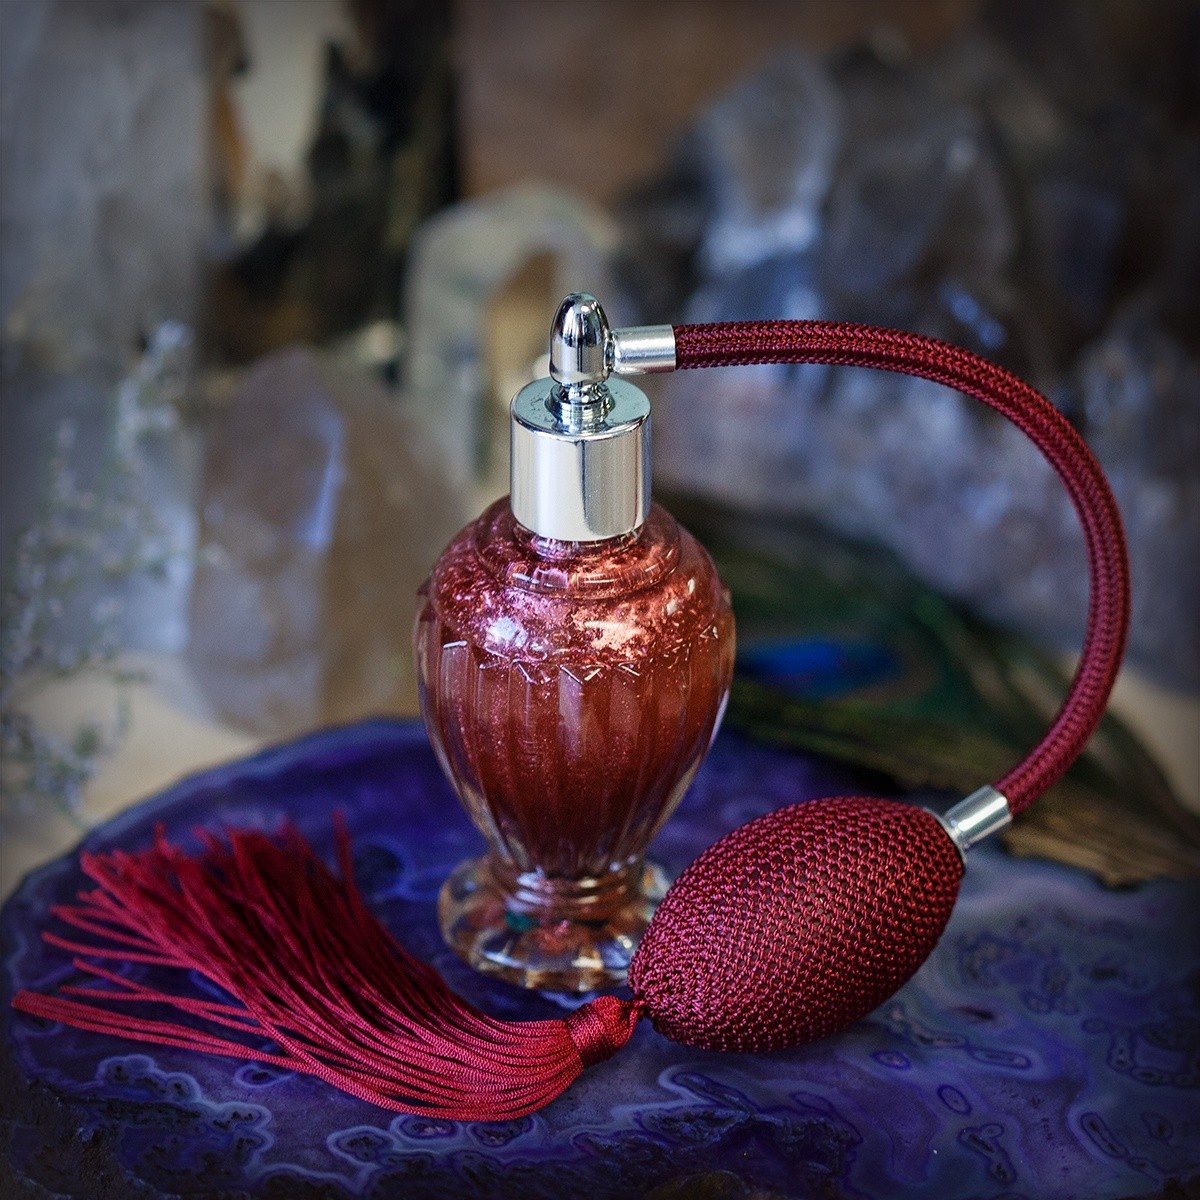 Perfume Vintage w Atomizer-Make Spray Perfume for Athena's bday 8_8